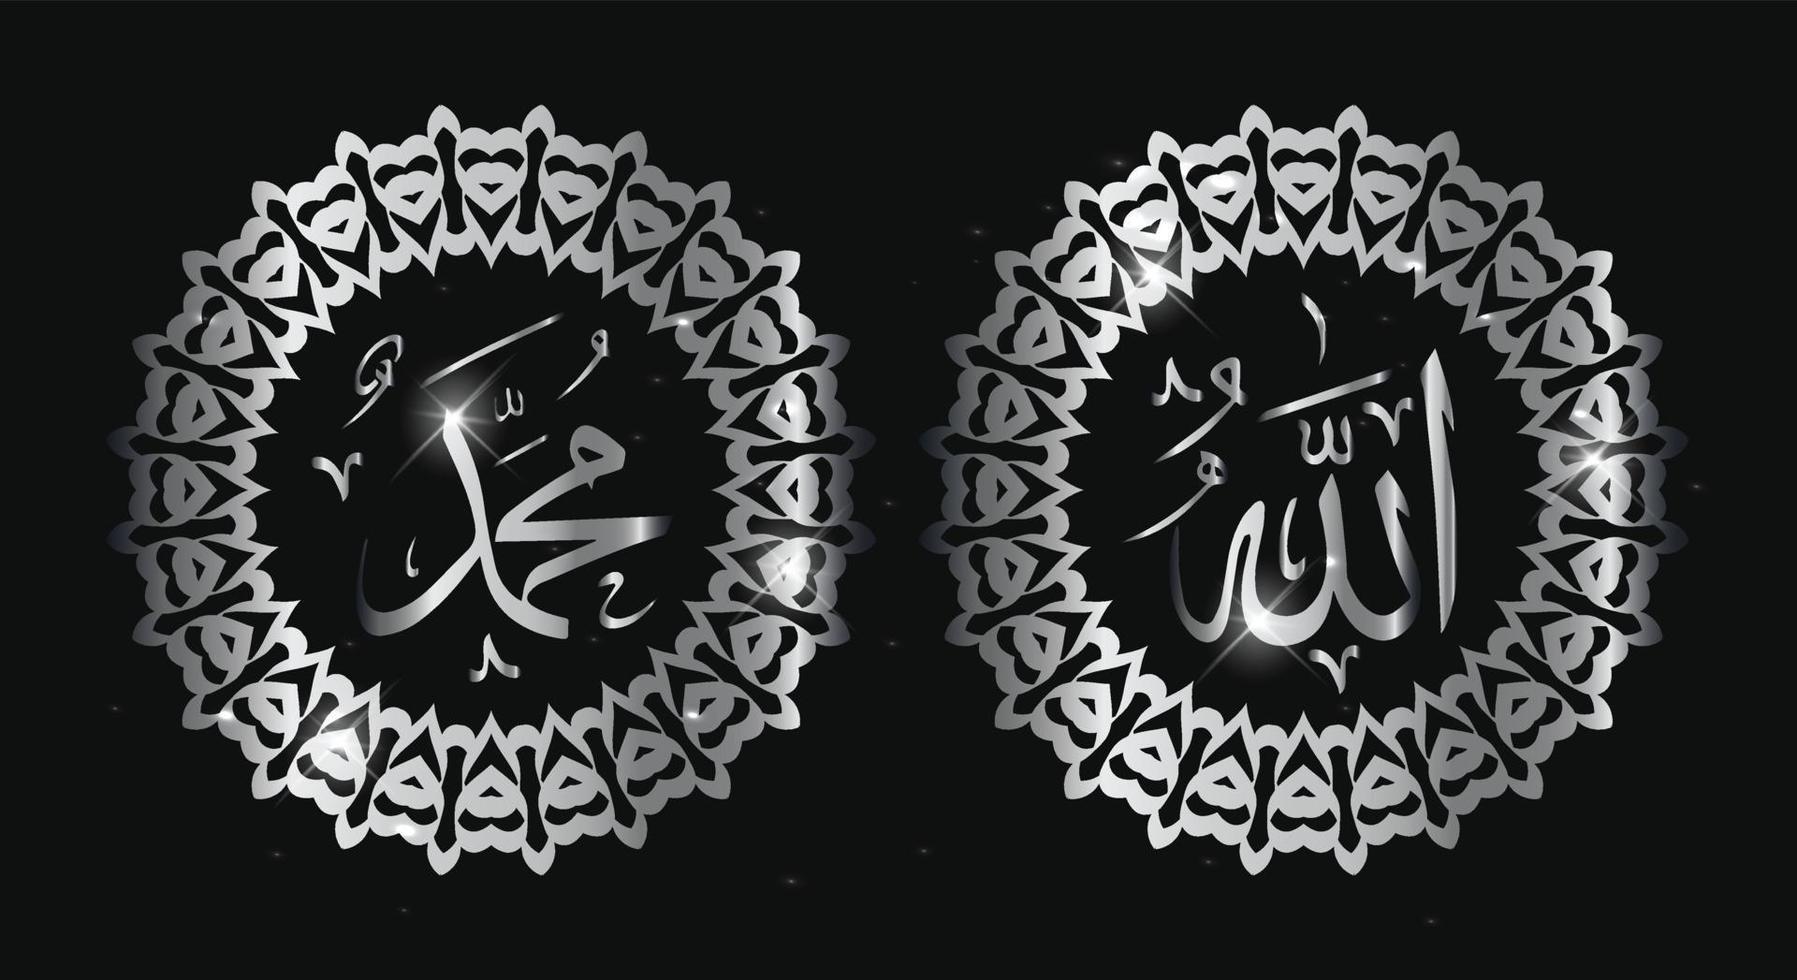 caligrafía árabe de allah muhammad con marco redondo y color plateado vector